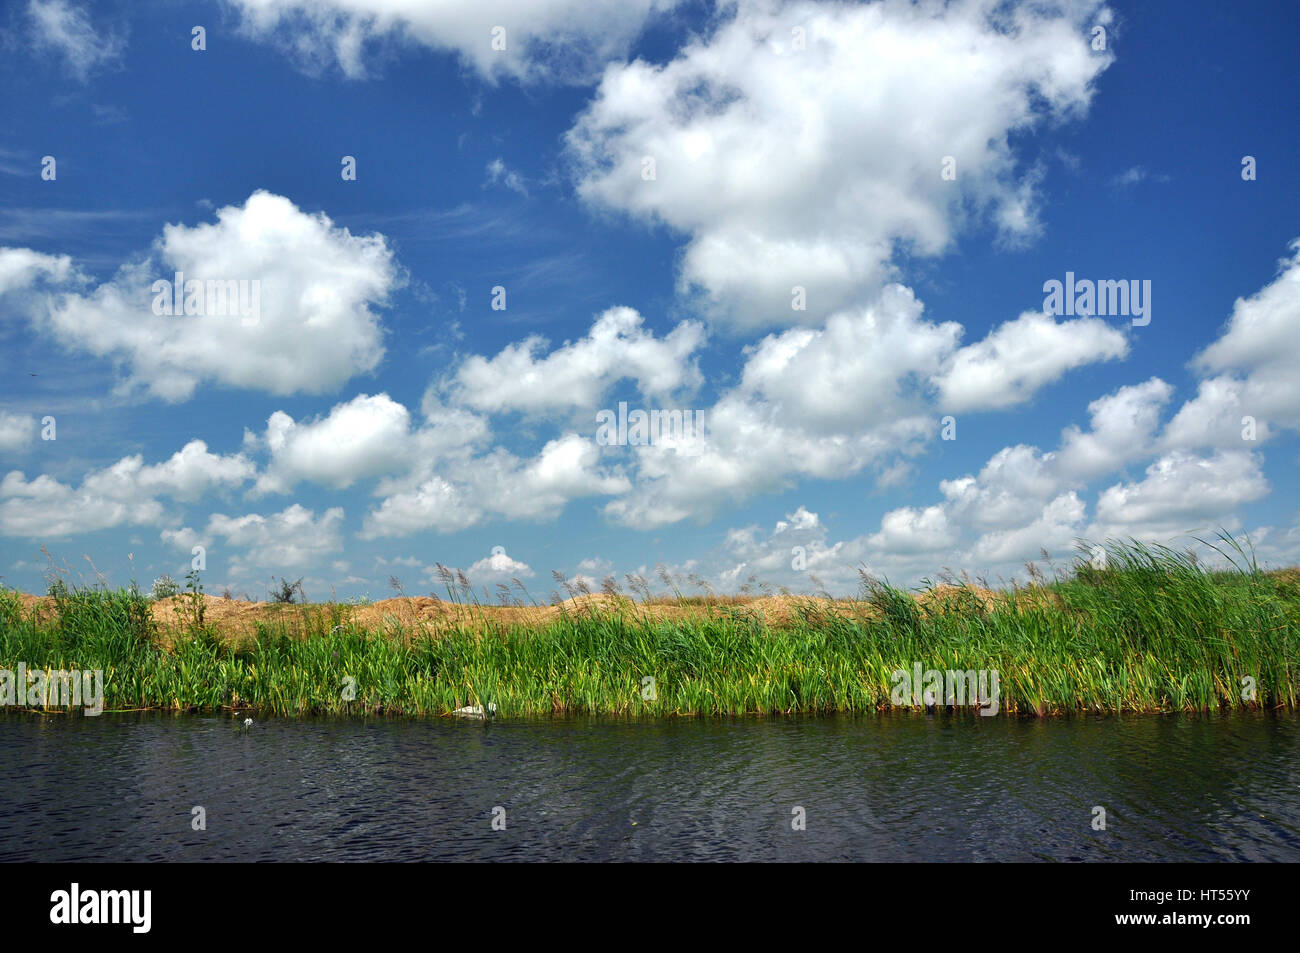 Waterline in the Danube delta, Romania Stock Photo